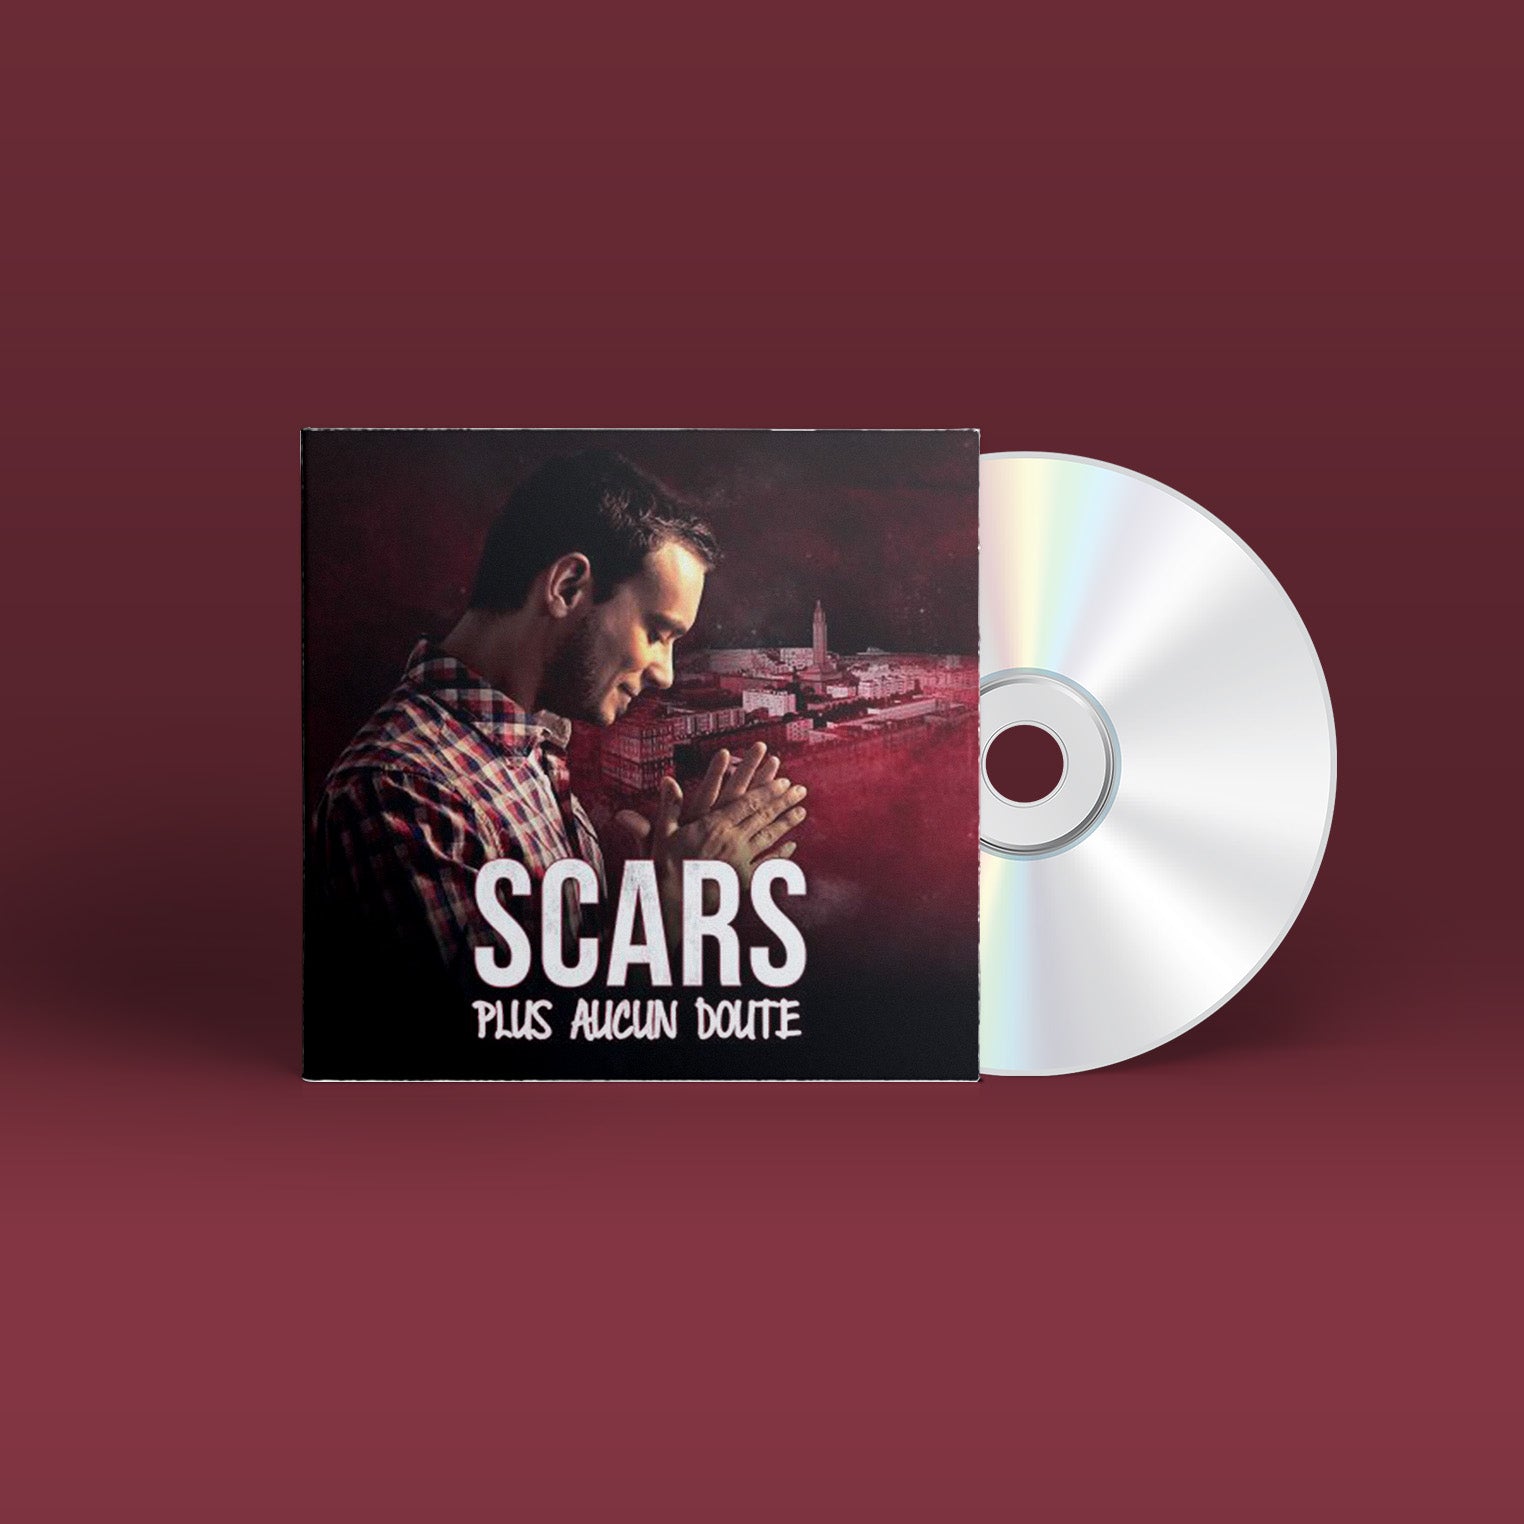 Scars - Plus aucun doute